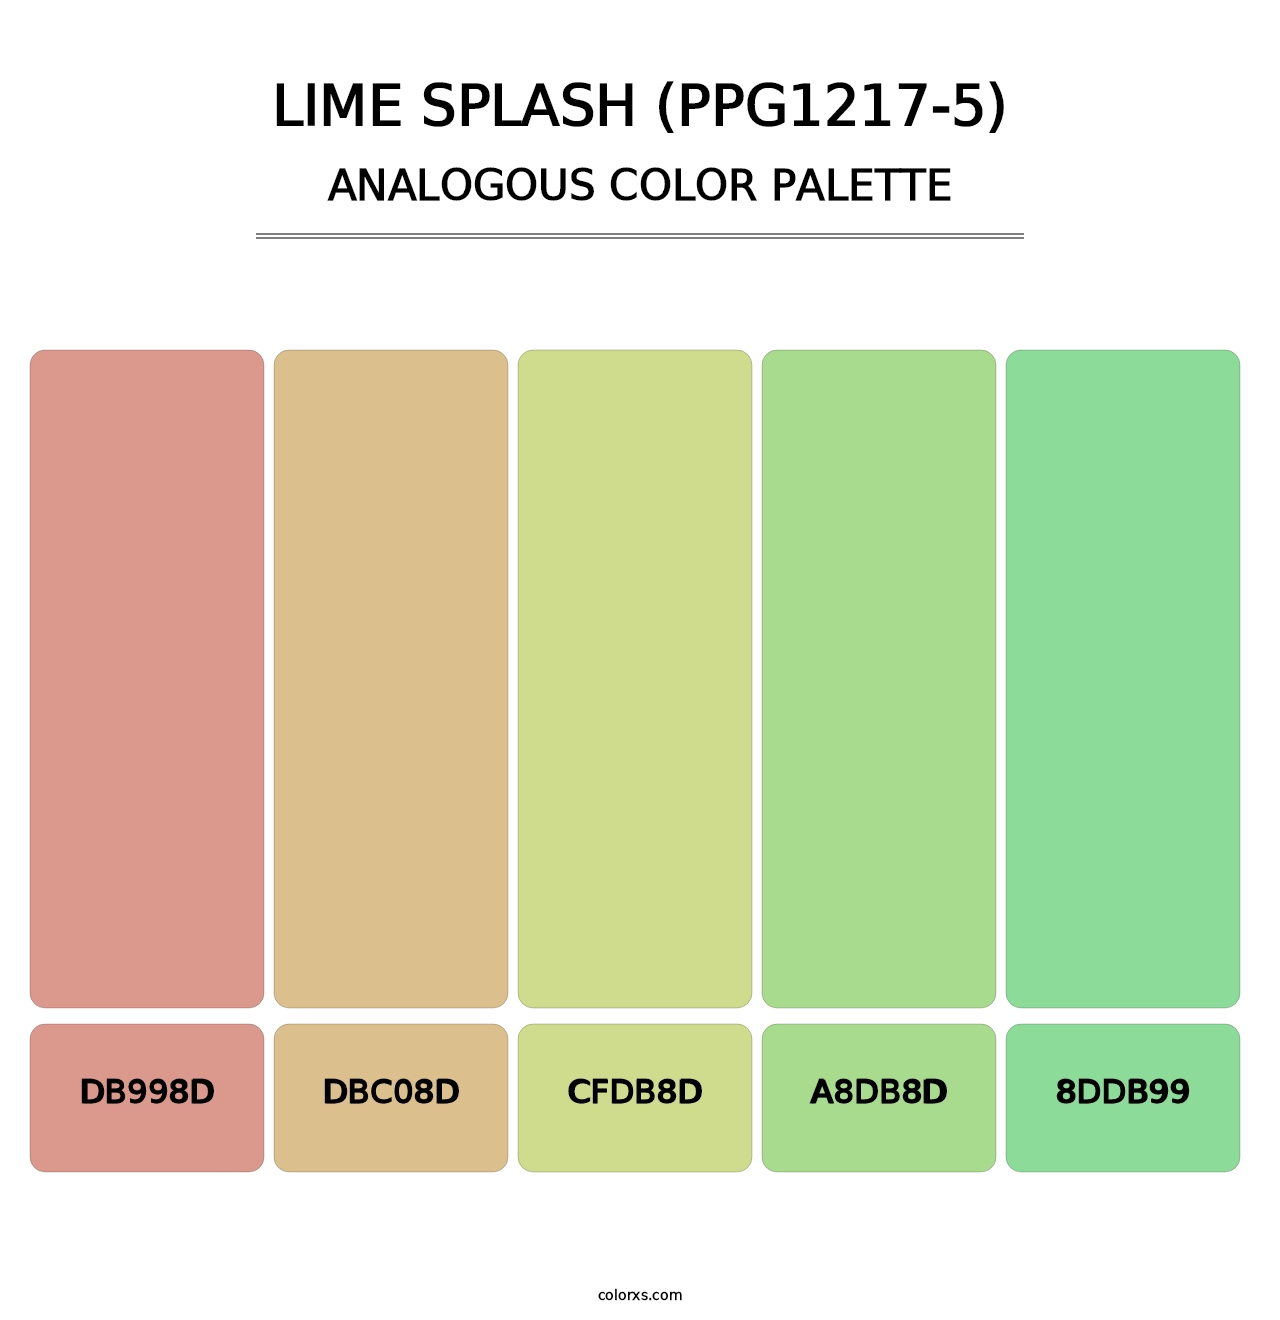 Lime Splash (PPG1217-5) - Analogous Color Palette